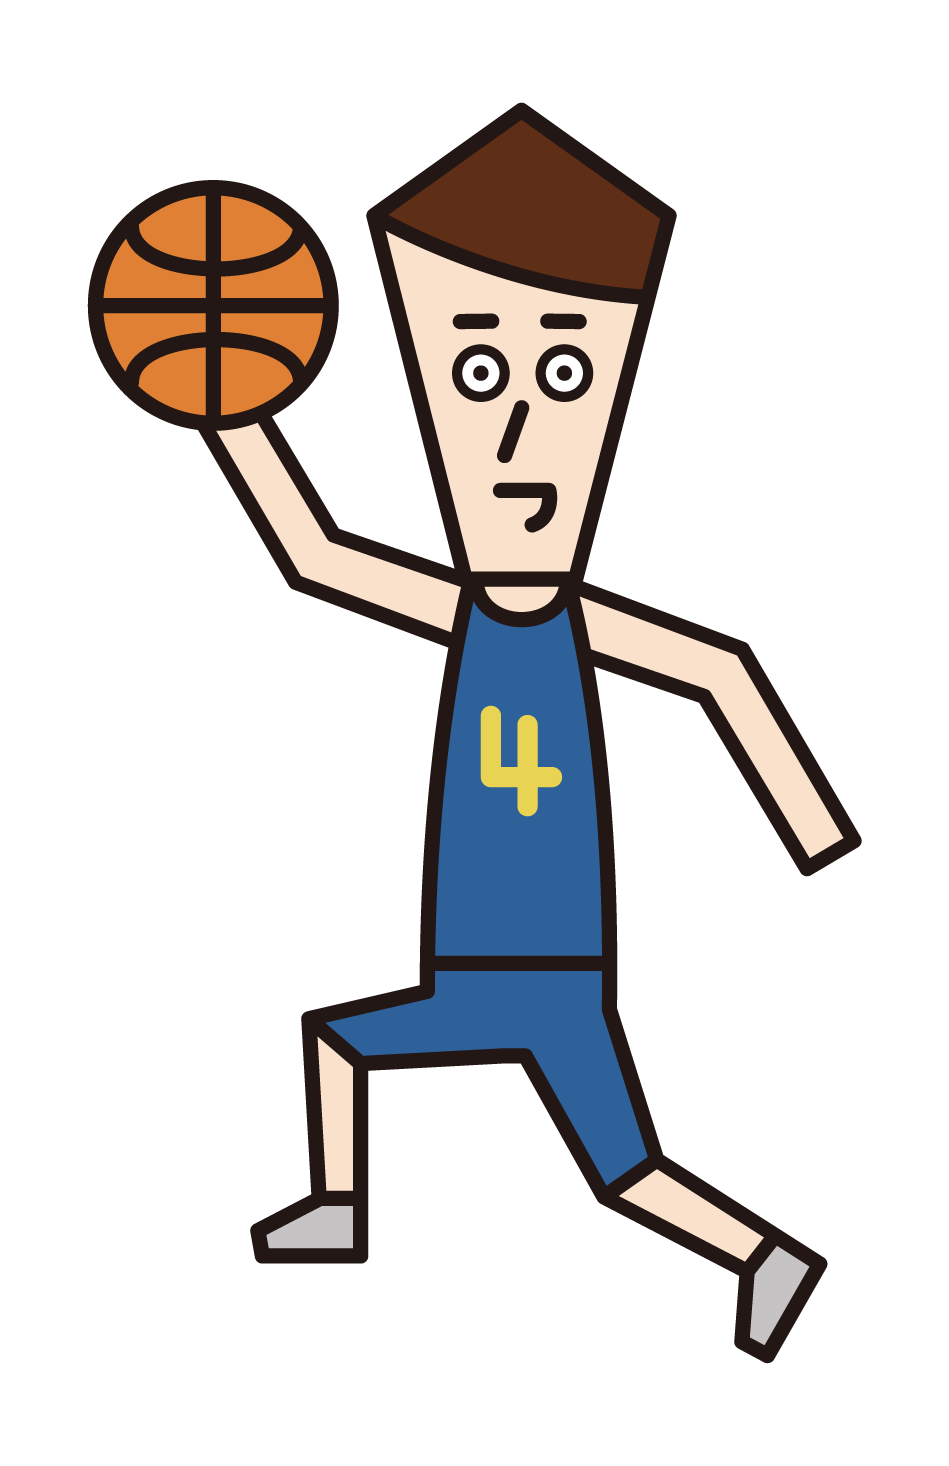 レイアップシュートをするバスケットボール選手（男性）のイラスト